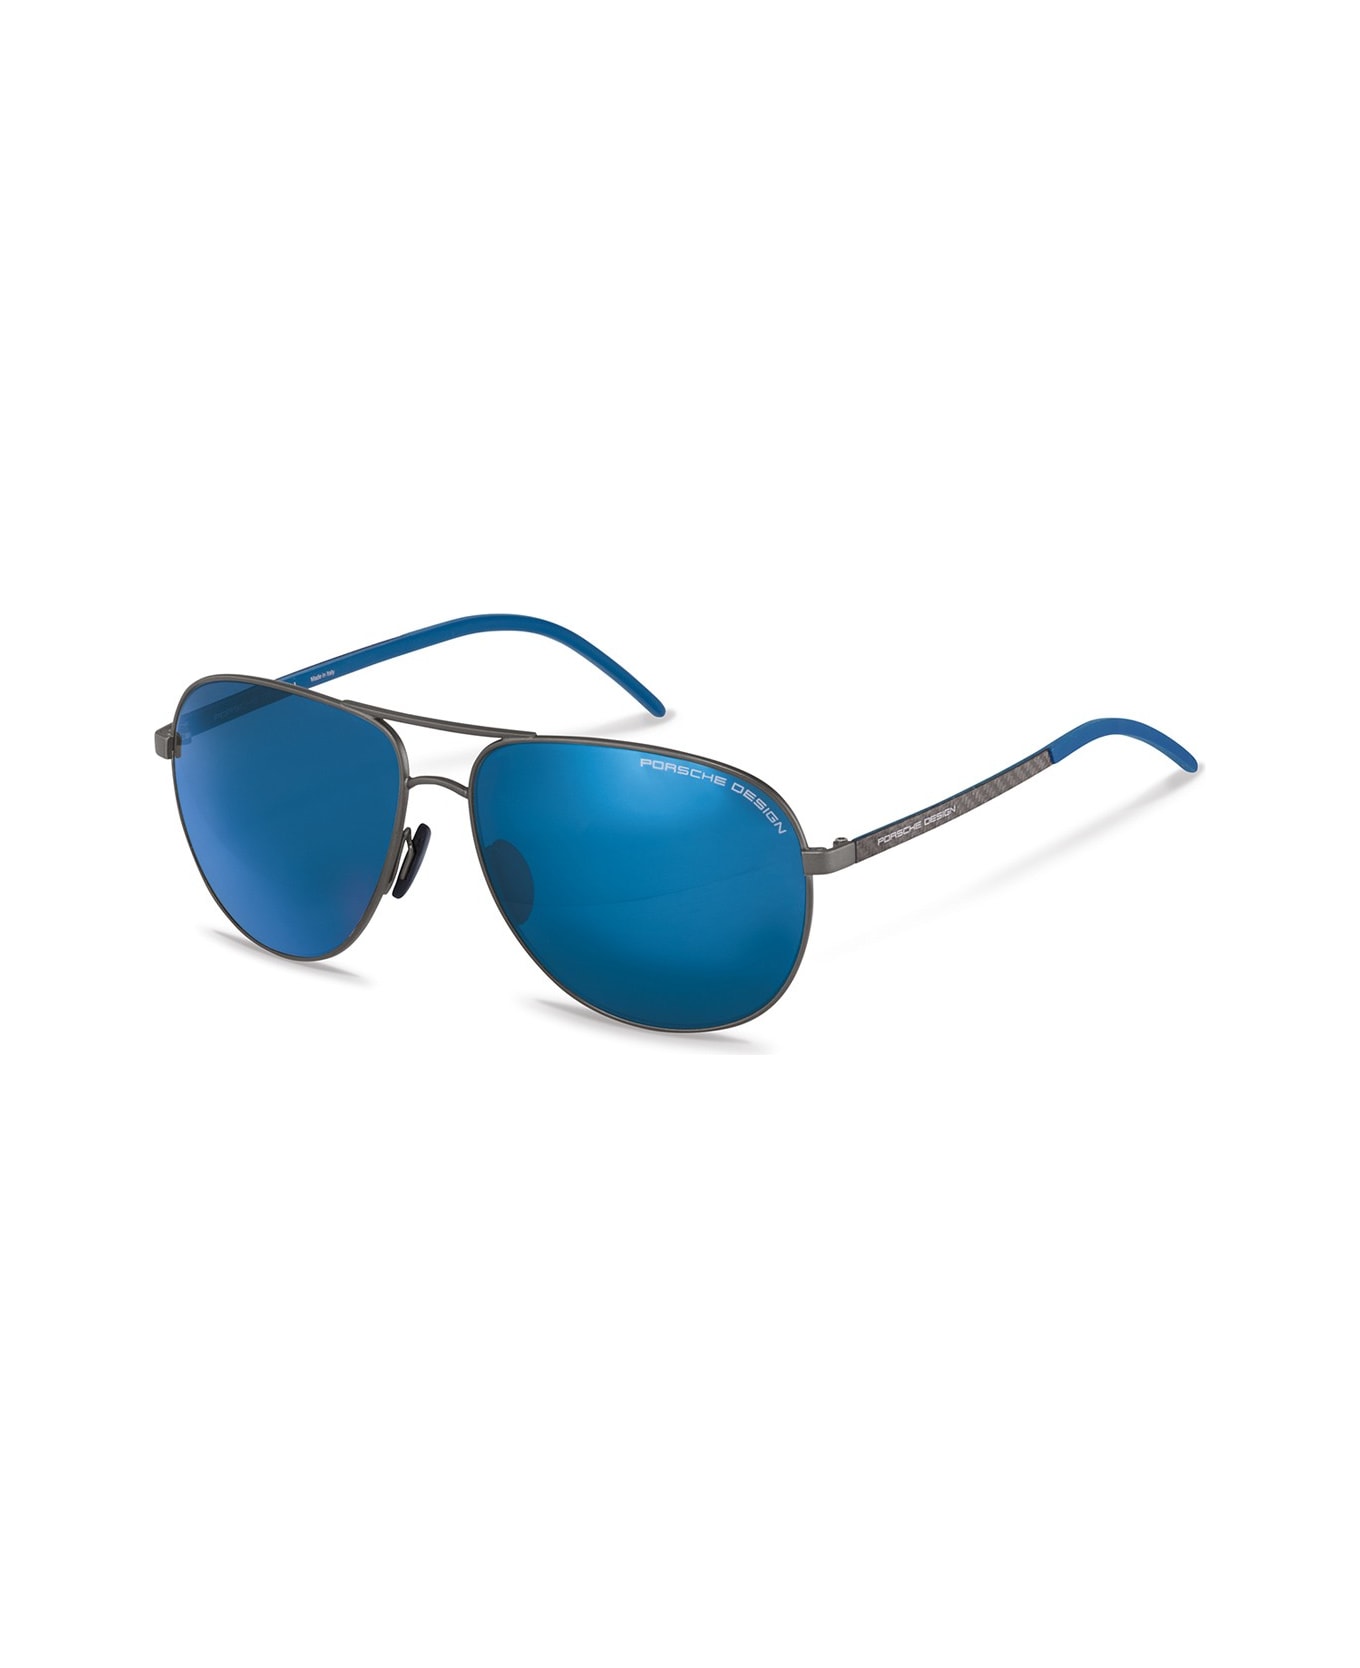 Porsche Design P8651 Sunglasses - Grigio サングラス